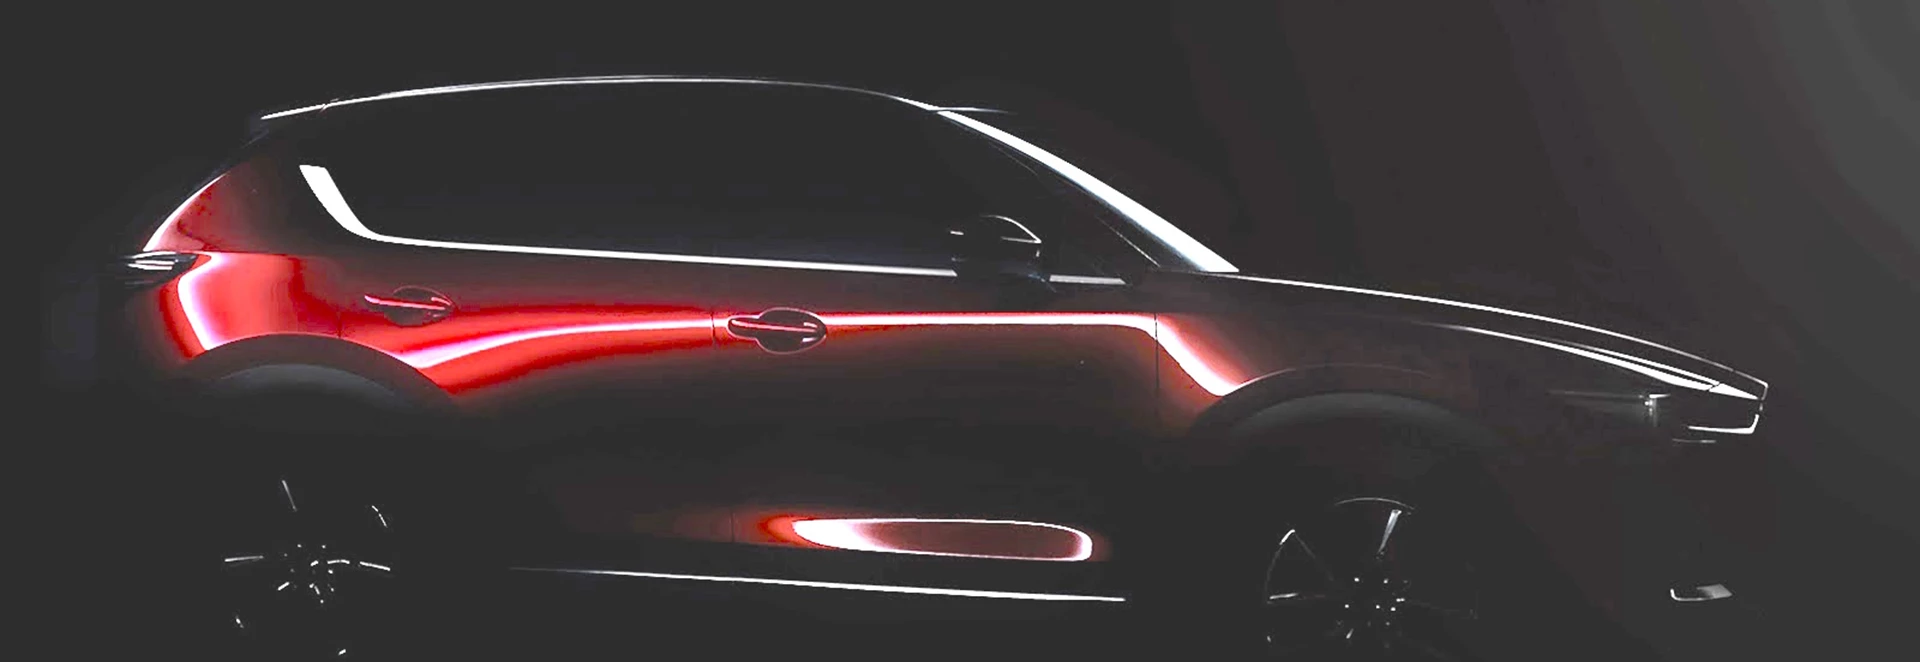 New Mazda CX-5 to be revealed in LA 